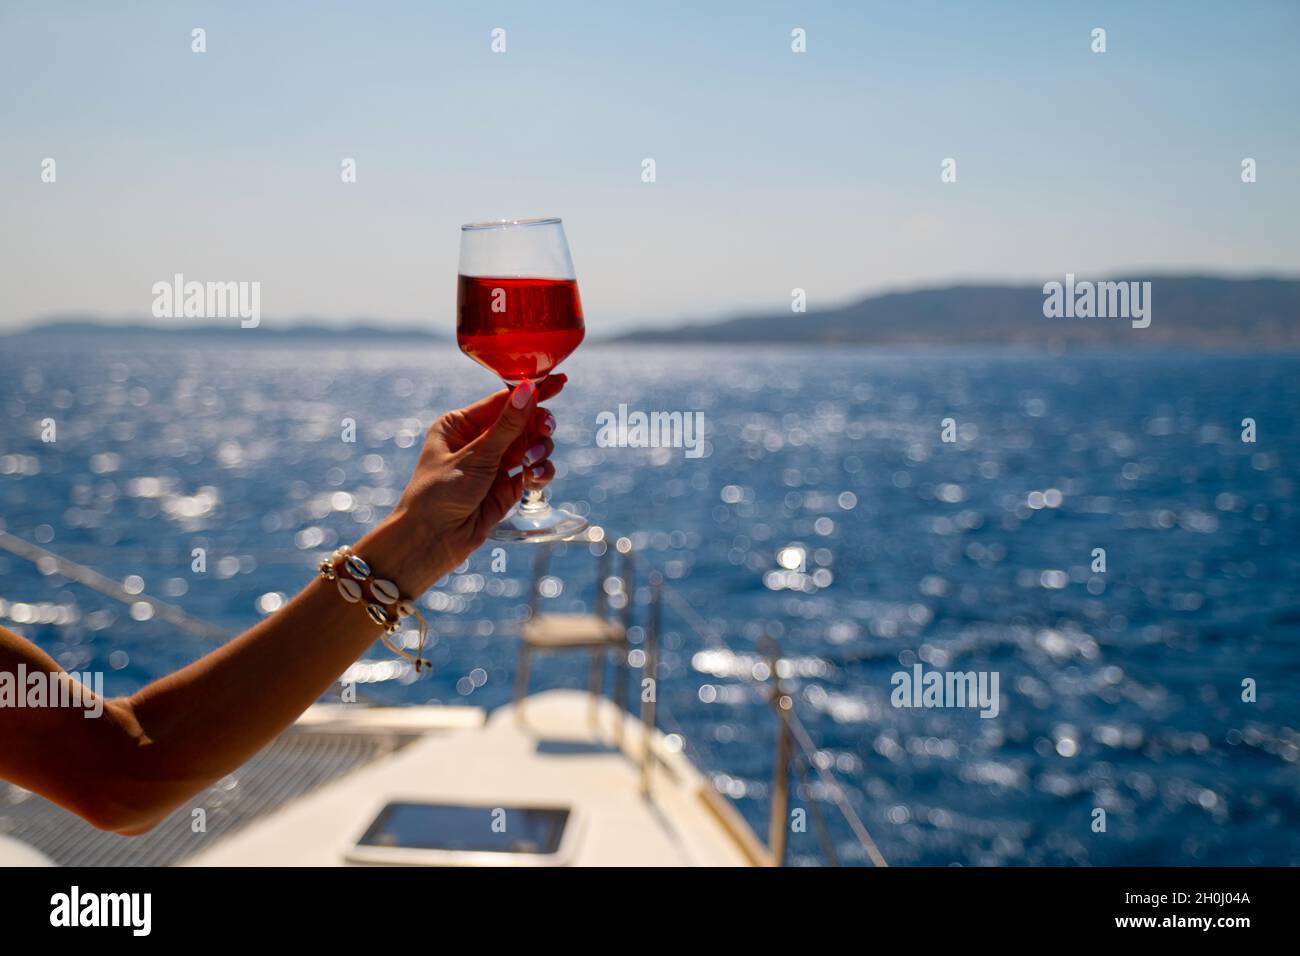 Femmina di mano che tiene un bicchiere di vino sul background del mare Foto Stock